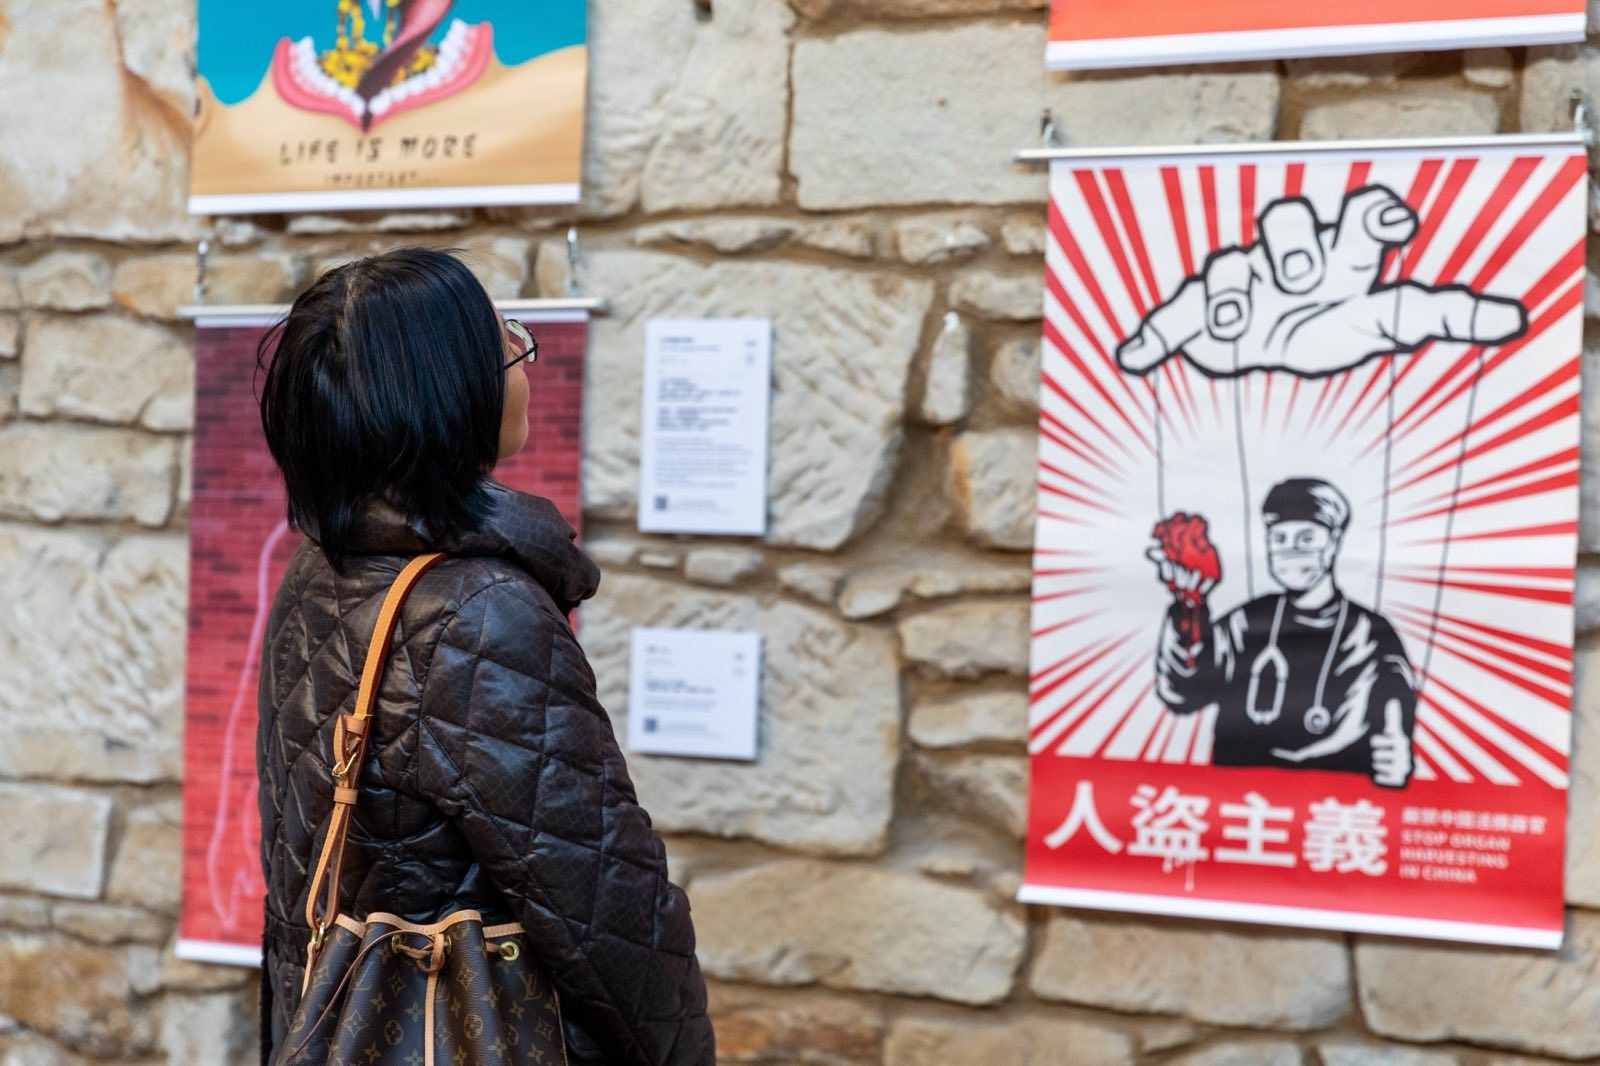 「中國及香港人權藝術節」展出幾十幅以器官移植的海報作品和與香港人權為主題的畫作。（蘇格蘭香港人提供）